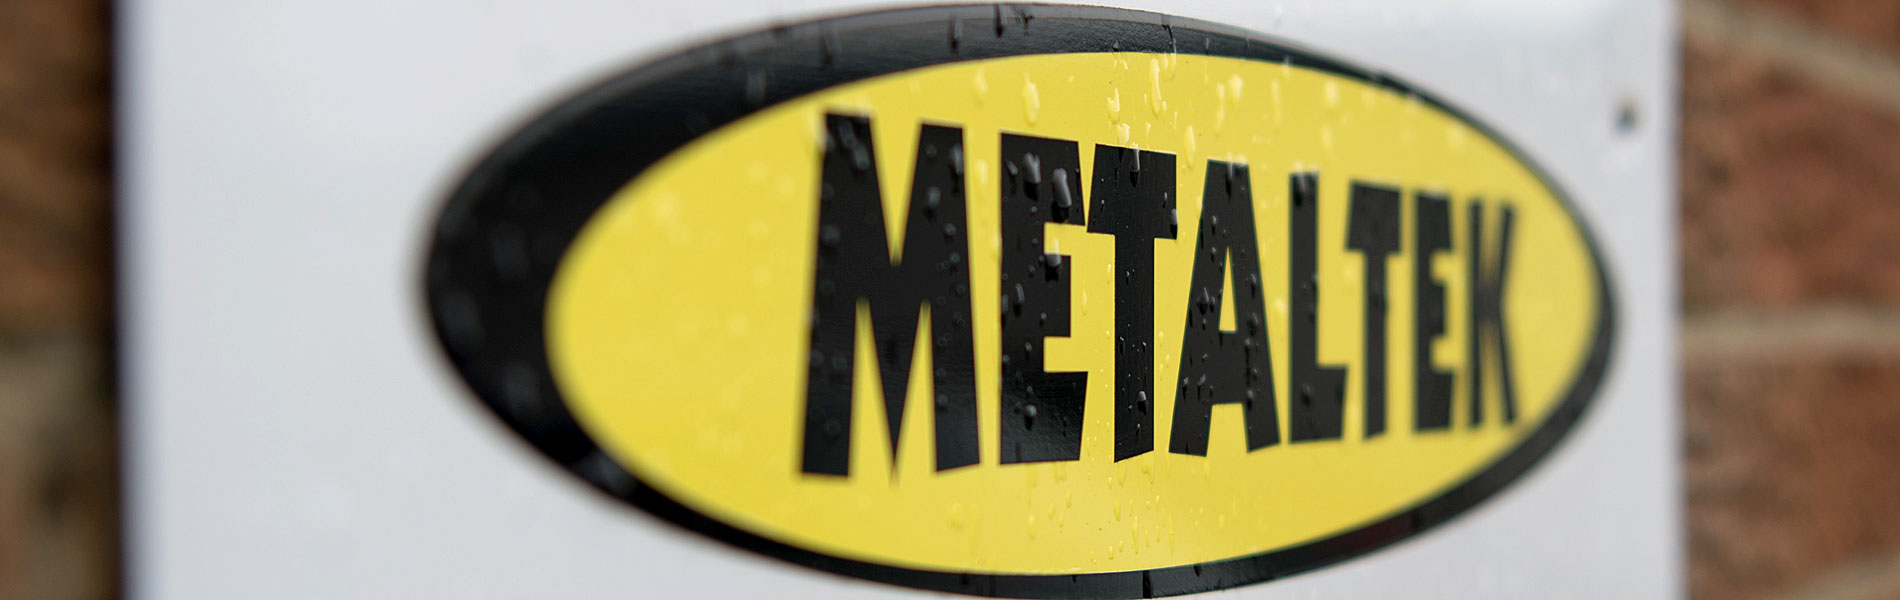 Metaltek banner